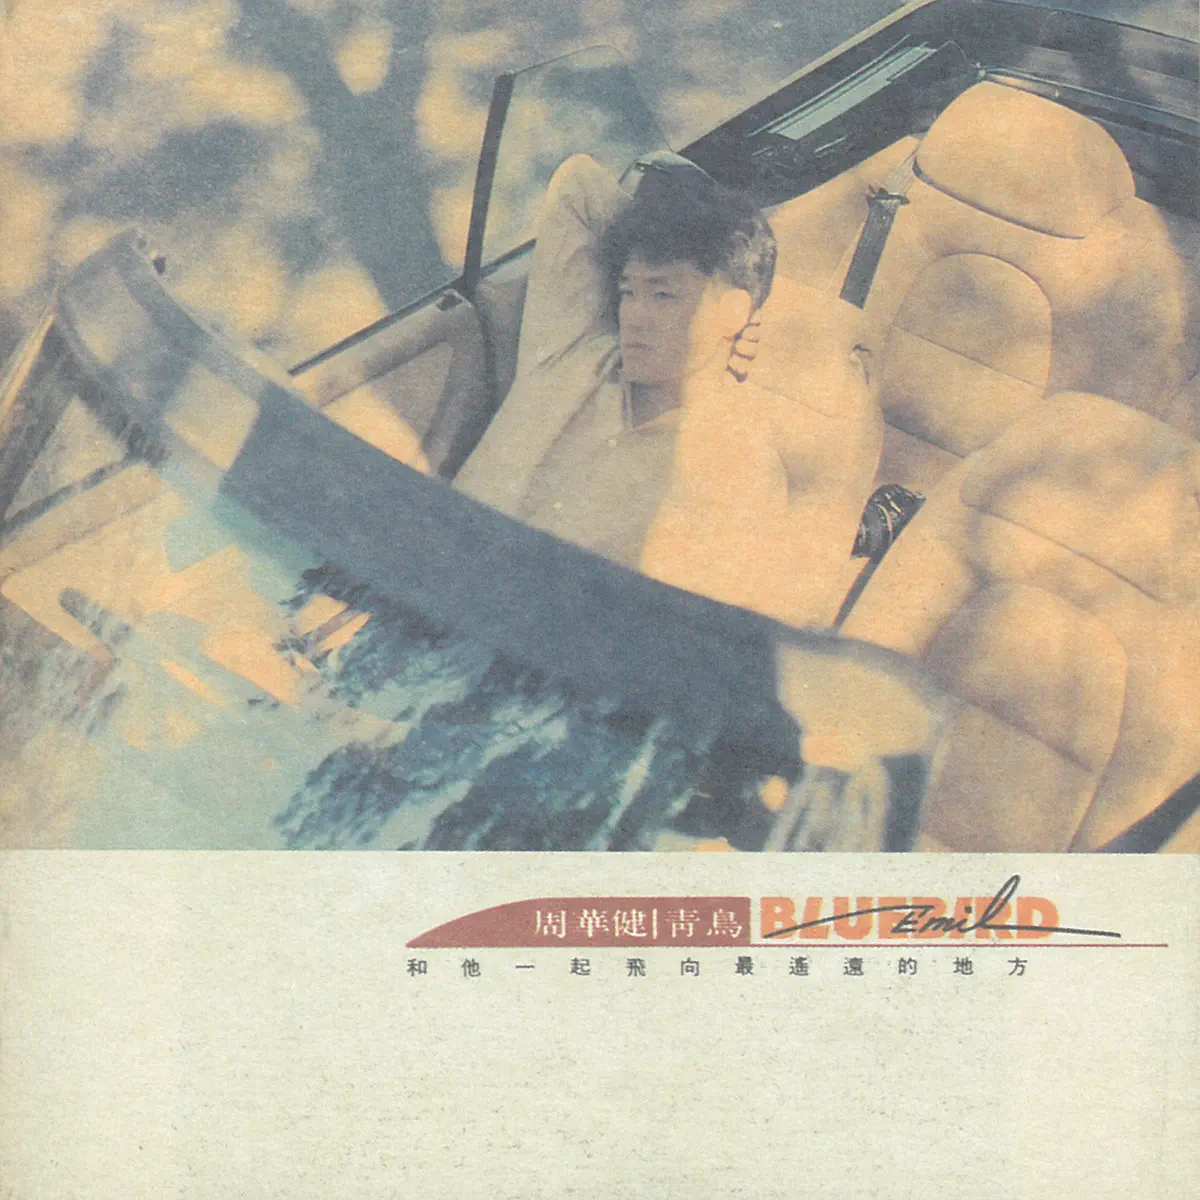 周華健 - Bluebird (1991) [iTunes Plus AAC M4A]-新房子